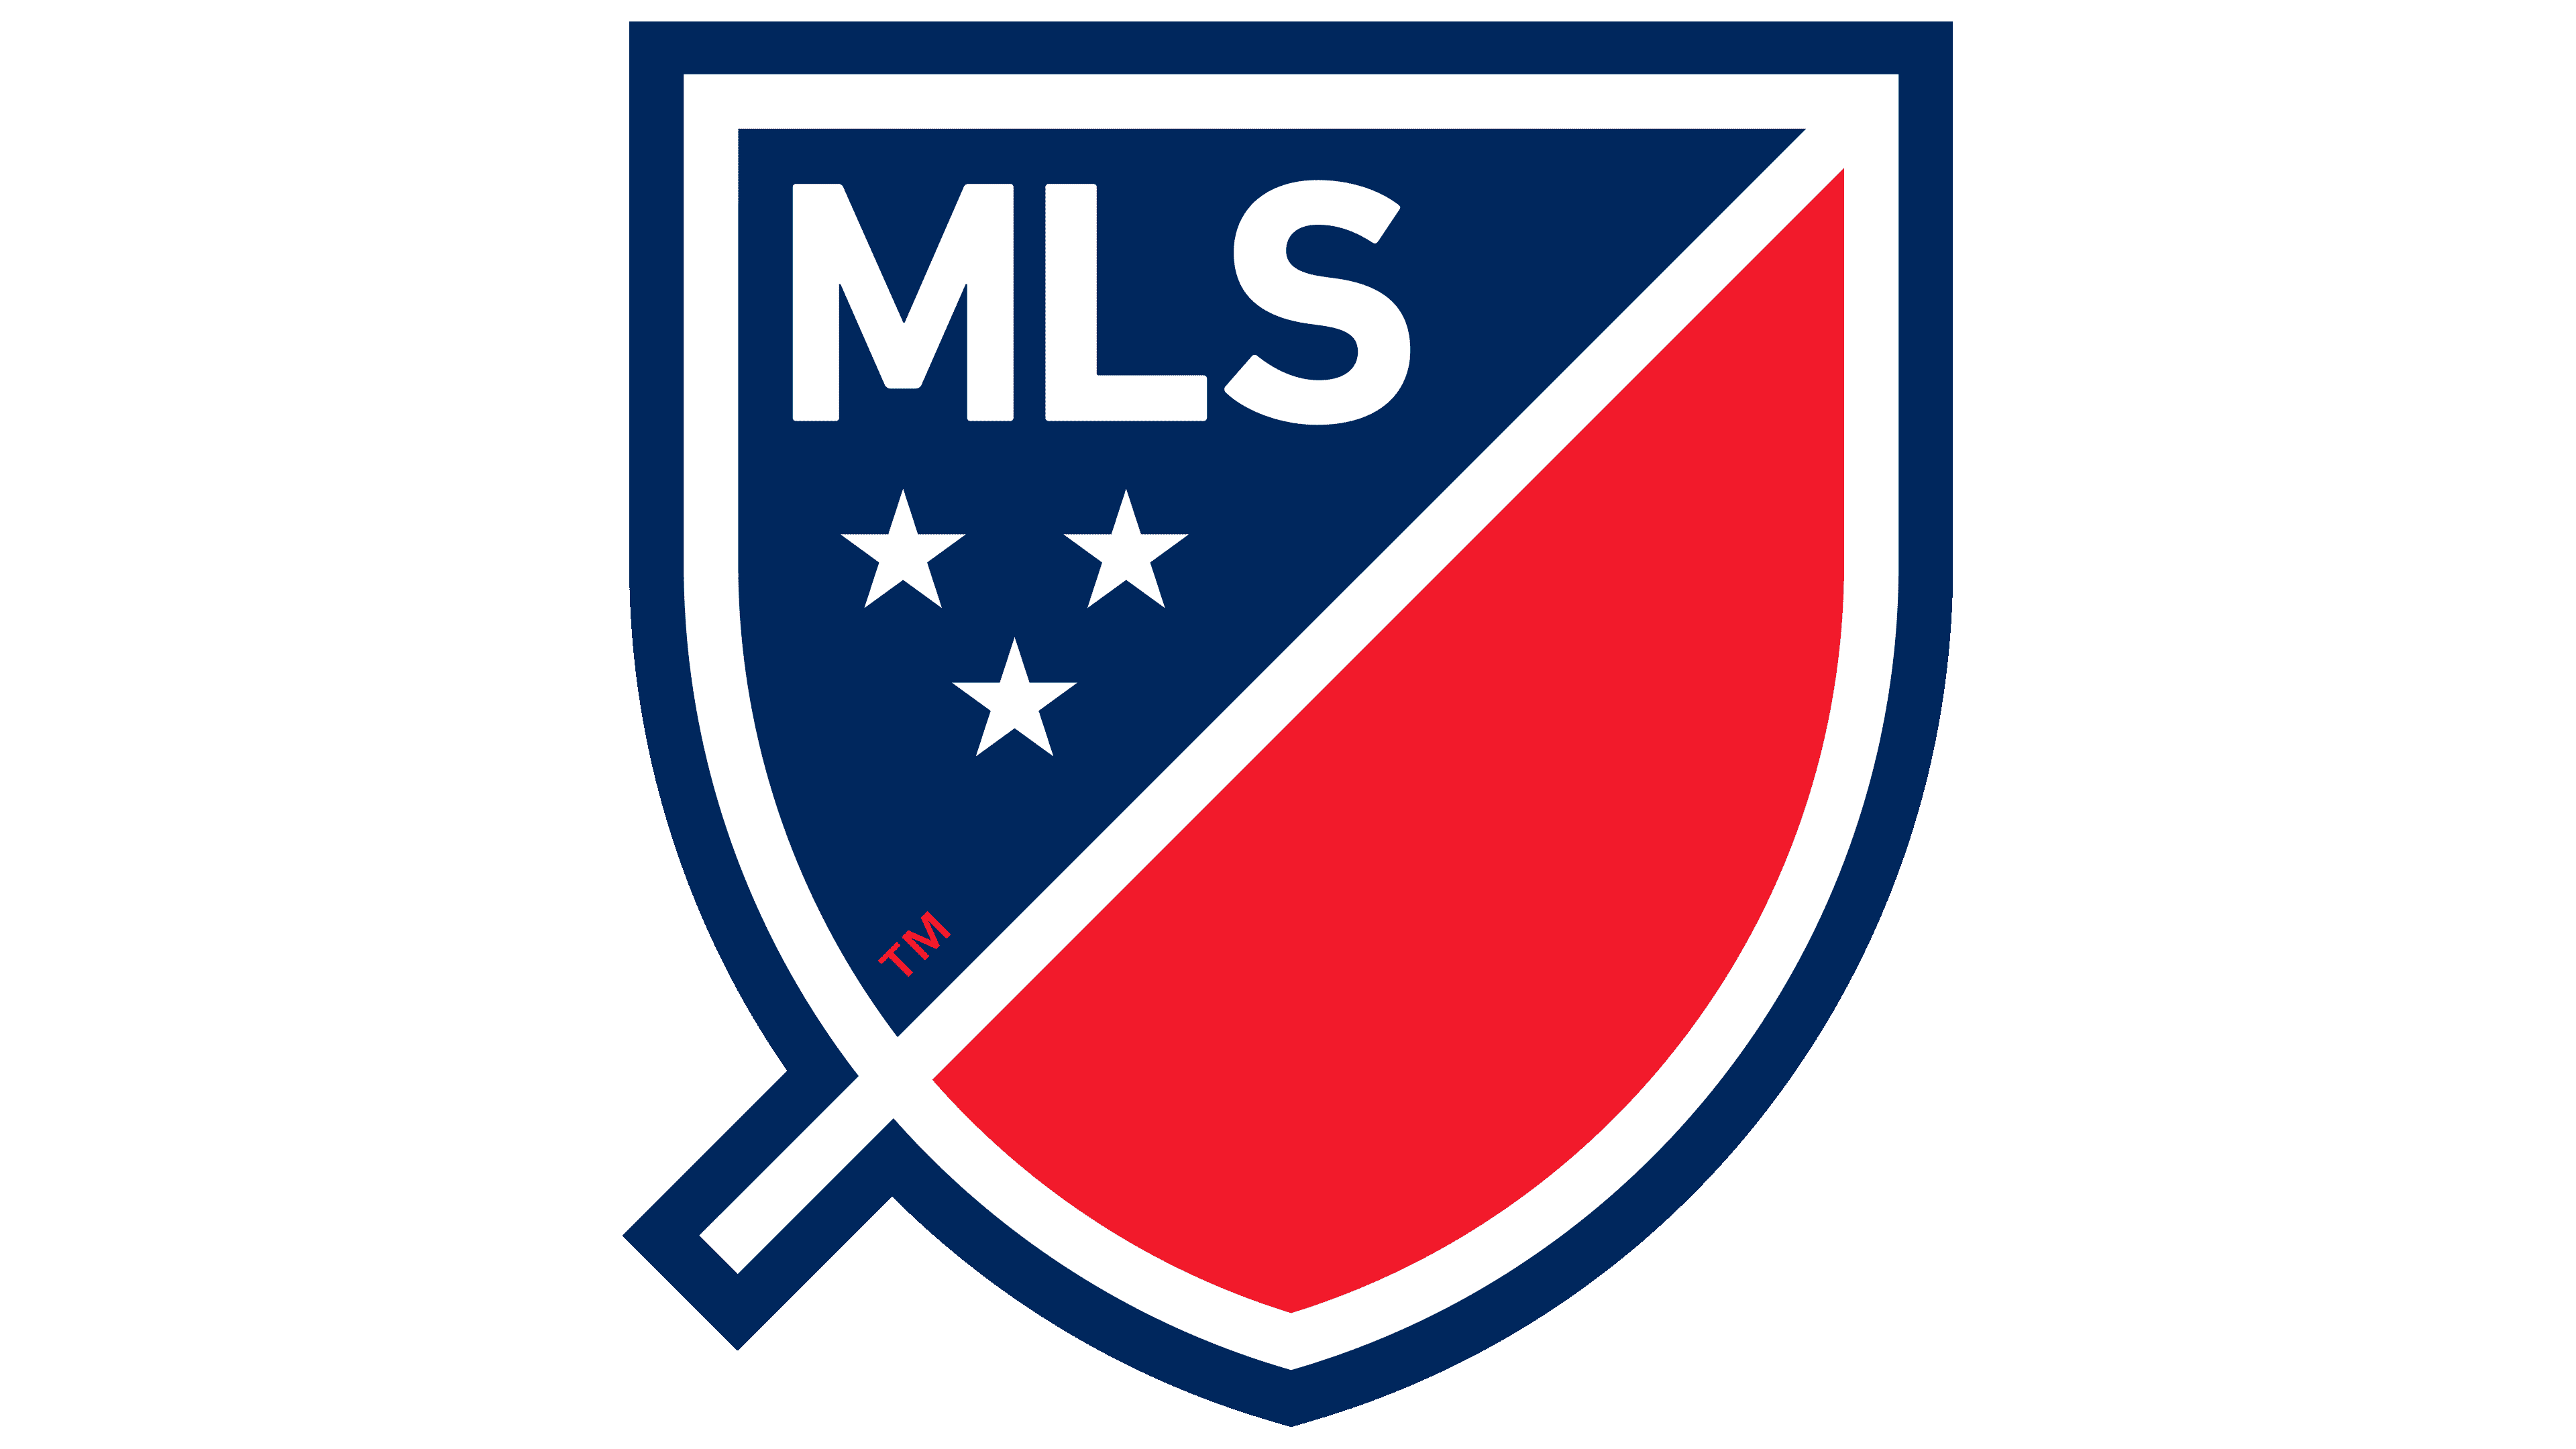 Major League Soccer logo